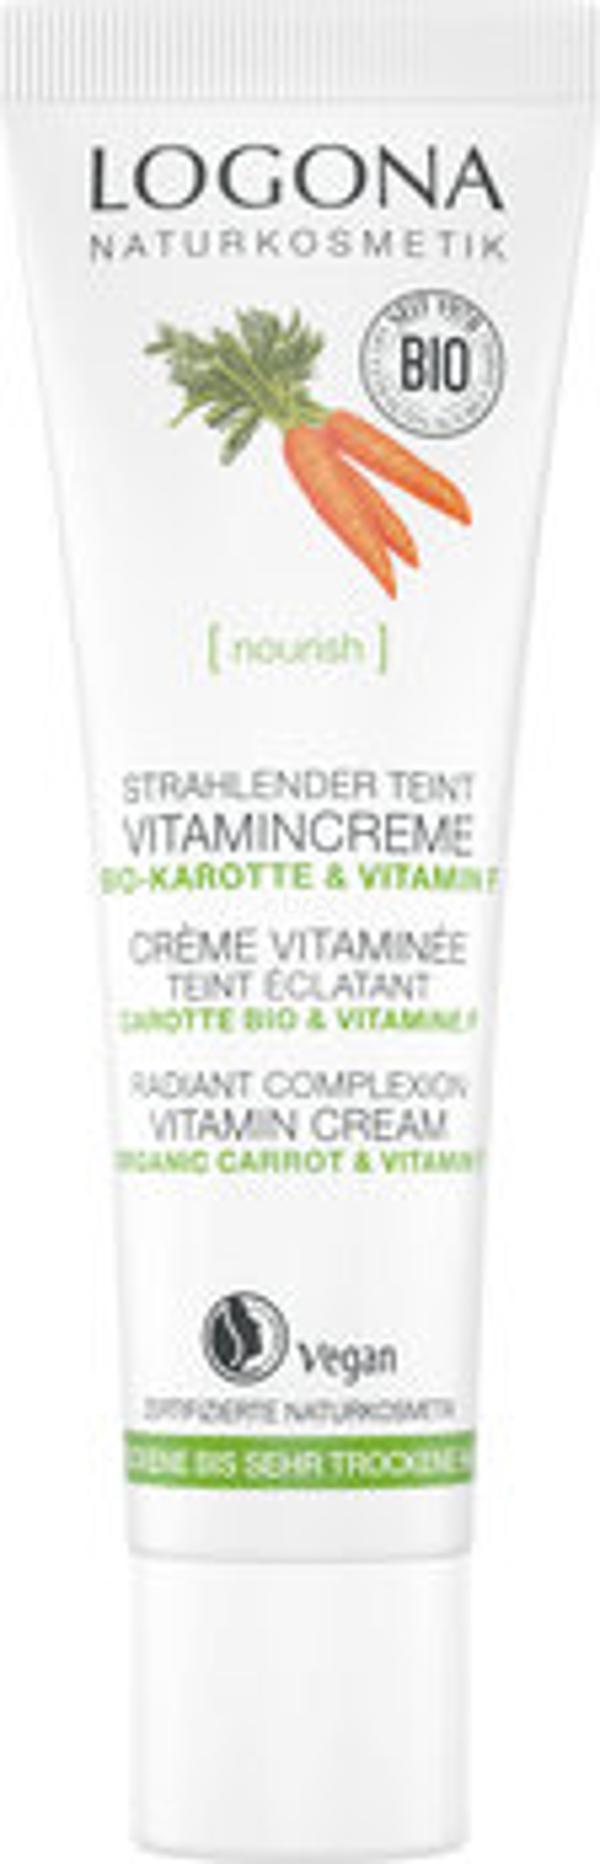 Produktfoto zu NOURISH Strahlender Teint Vitamincreme 30ml